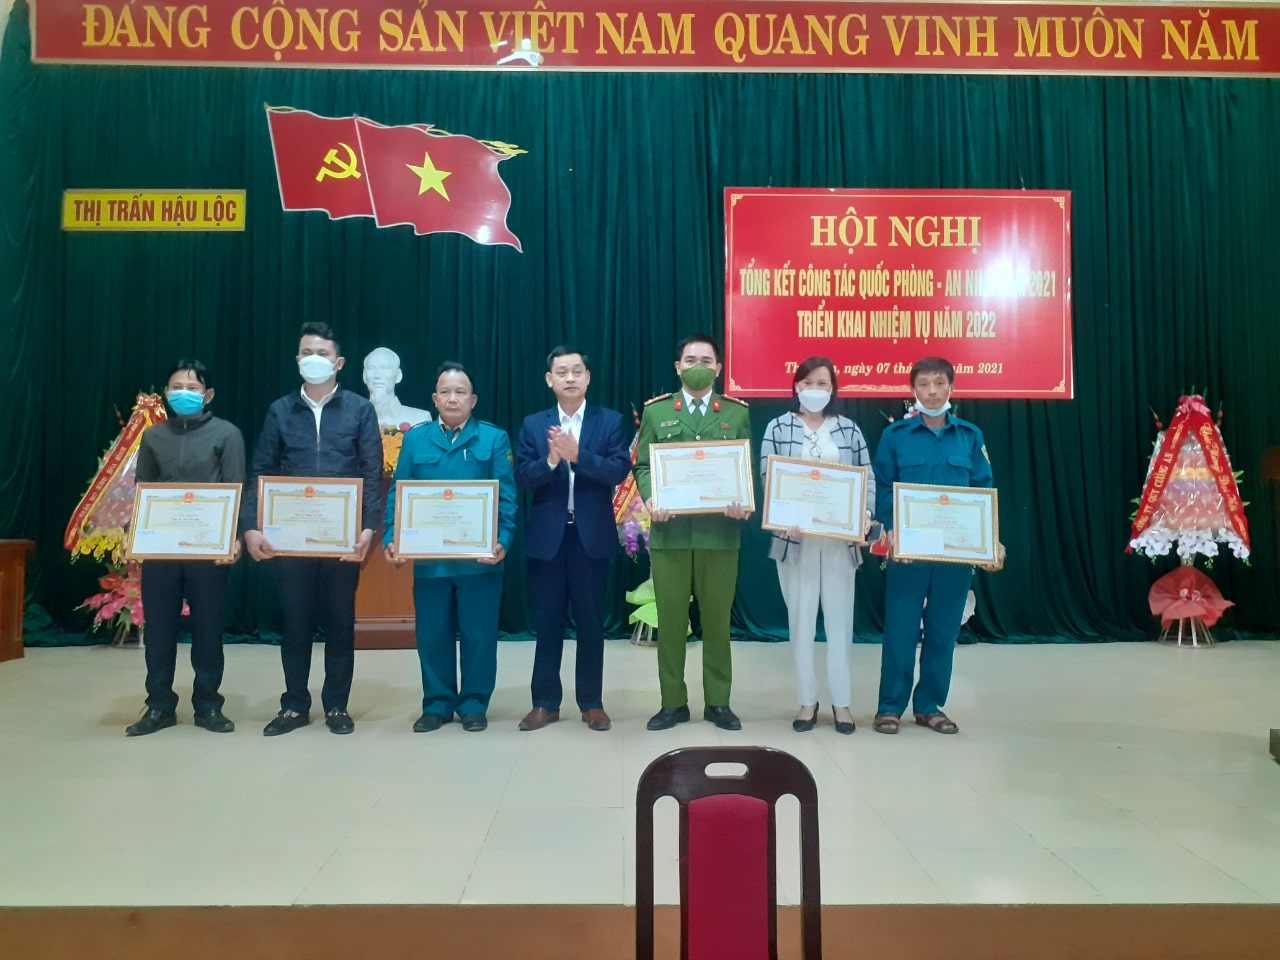 Thị trấn Hậu Lộc: Phát huy vai trò của Mặt trận tổ quốc và các đoàn thể trong công tác tuyển quân năm 2023